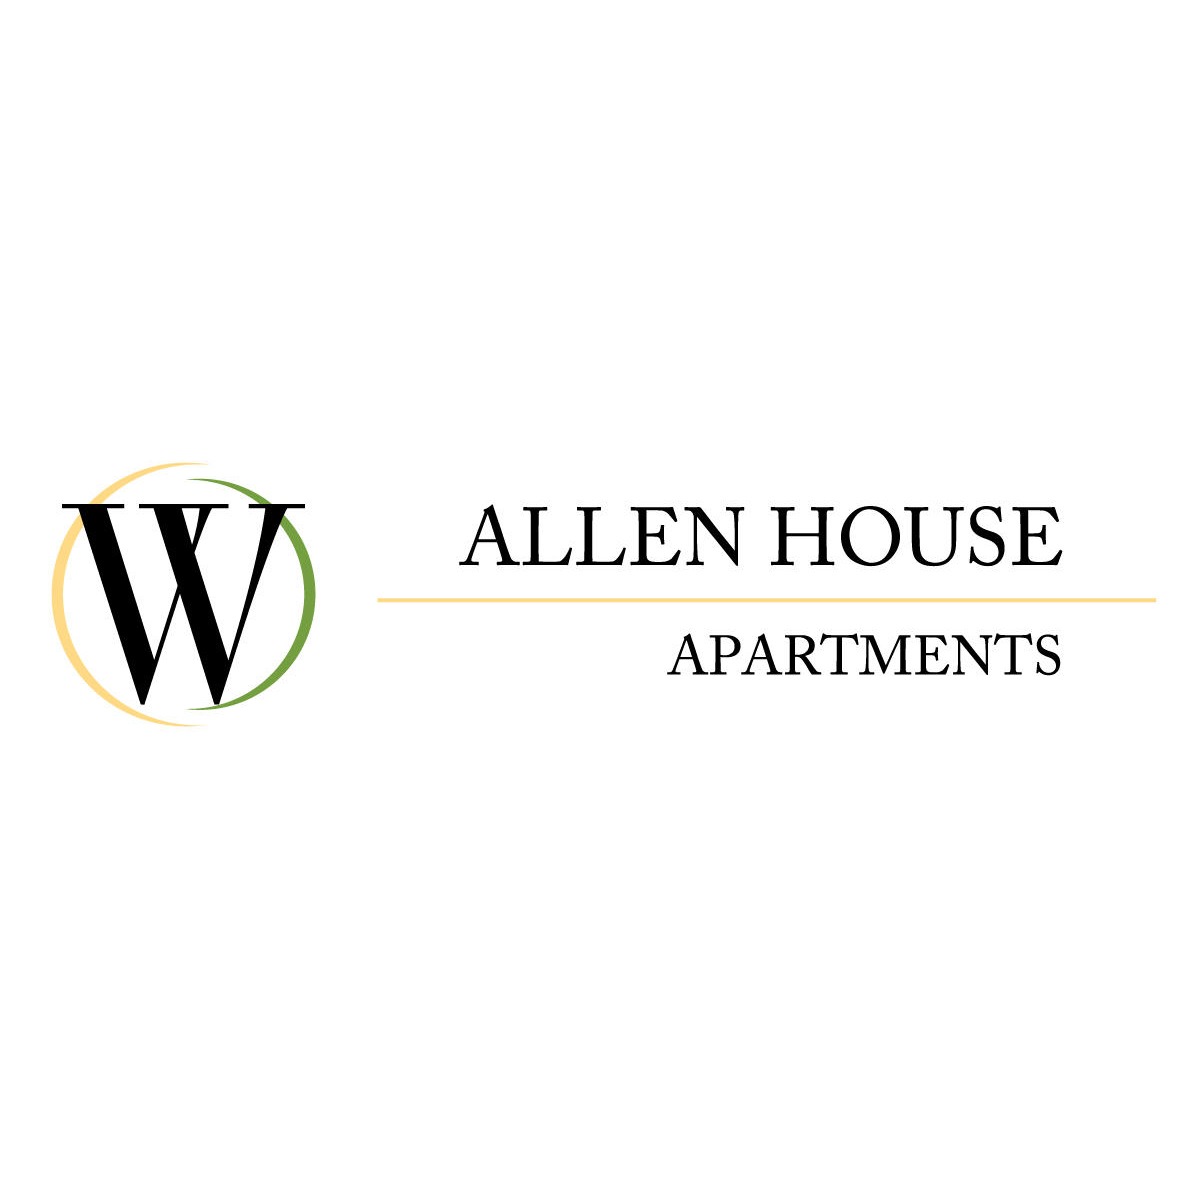 Allen House Apartments - Houston, TX 77019 - (346)908-3943 | ShowMeLocal.com